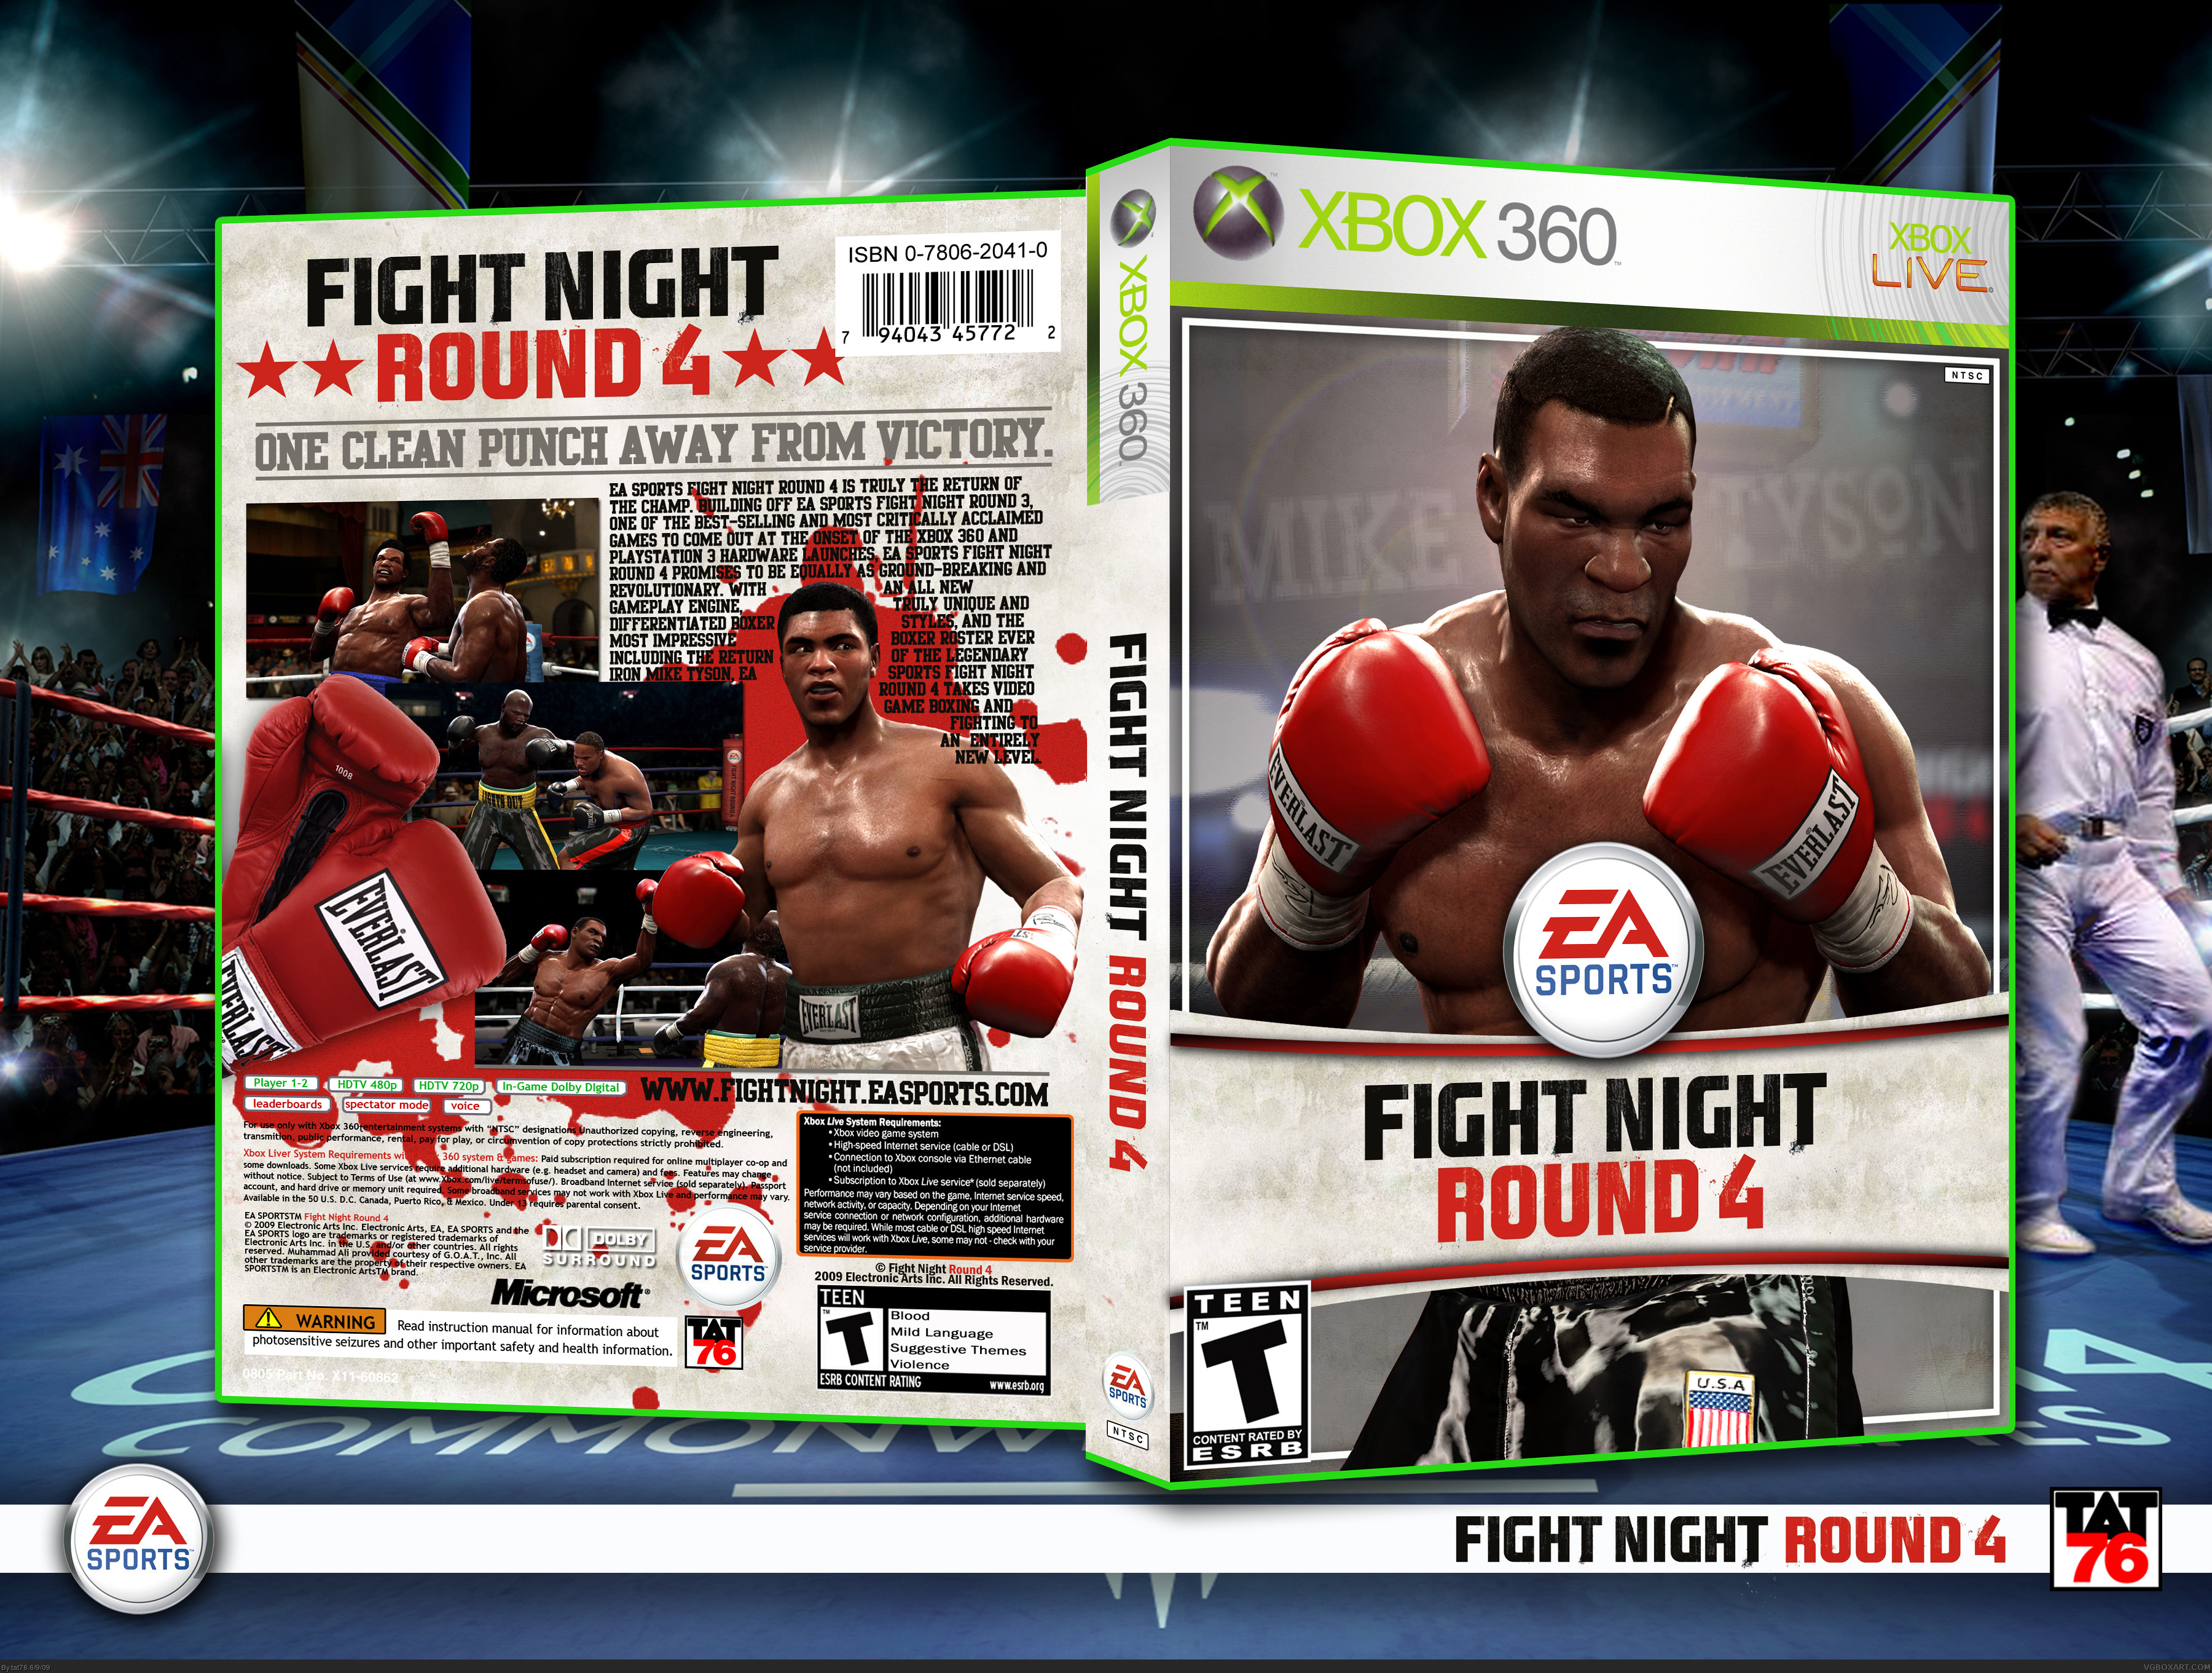 Rounds xbox. Fight Night Round 4 Xbox 360. Fight Night Round 4 Xbox 360 обложка. Fight Night Round 3 обложка. Файт Найт раунд 3 Xbox 360.